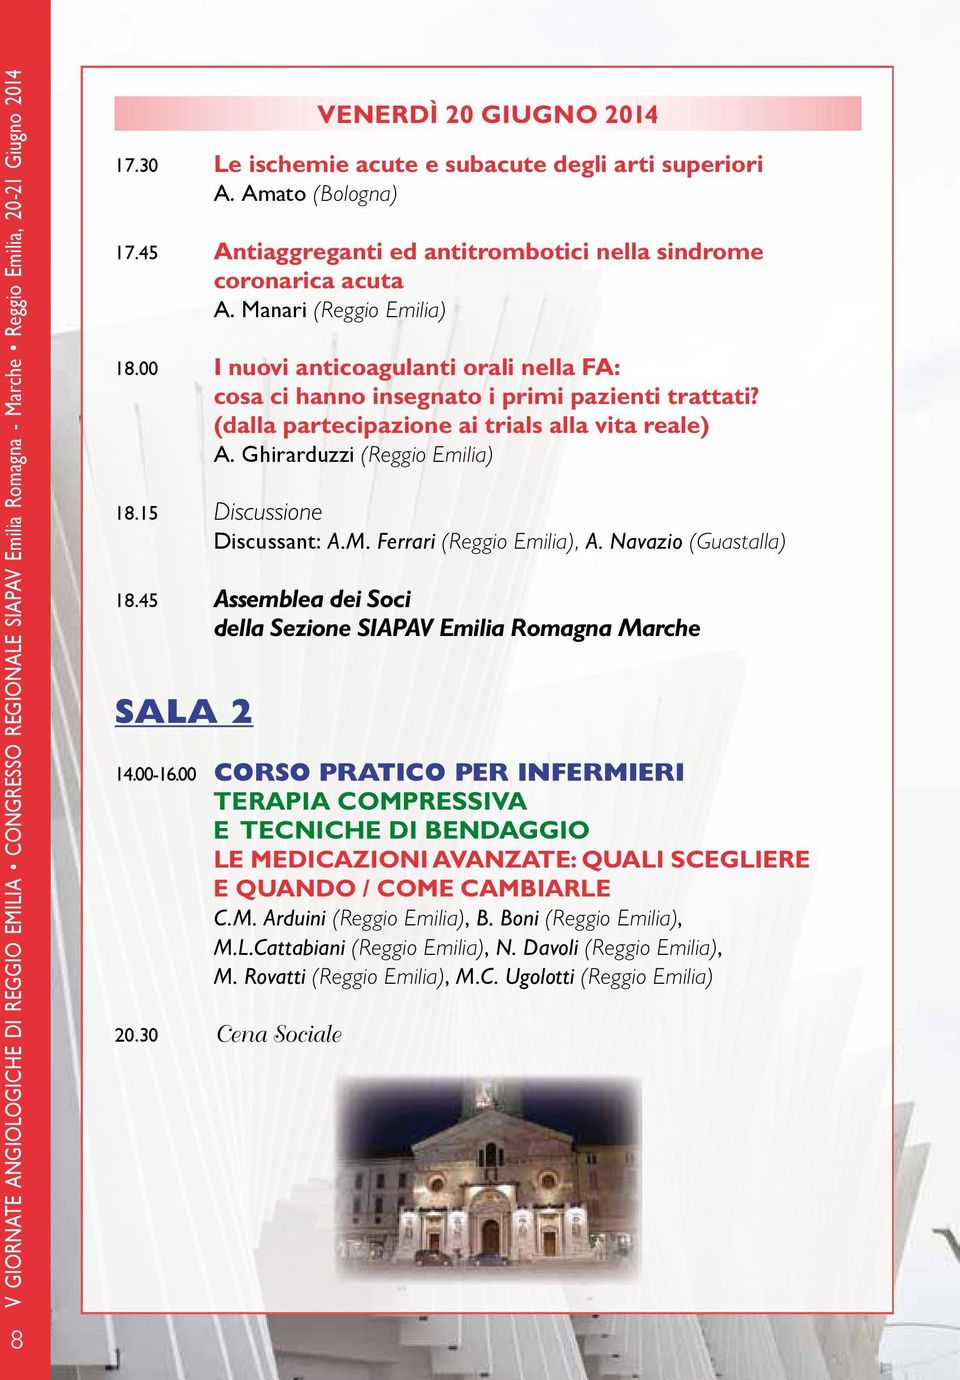 (dalla partecipazione ai trials alla vita reale) A. Ghirarduzzi () 18.15 Discussione Discussant: A.M. Ferrari (), A. Navazio (Guastalla) 18.